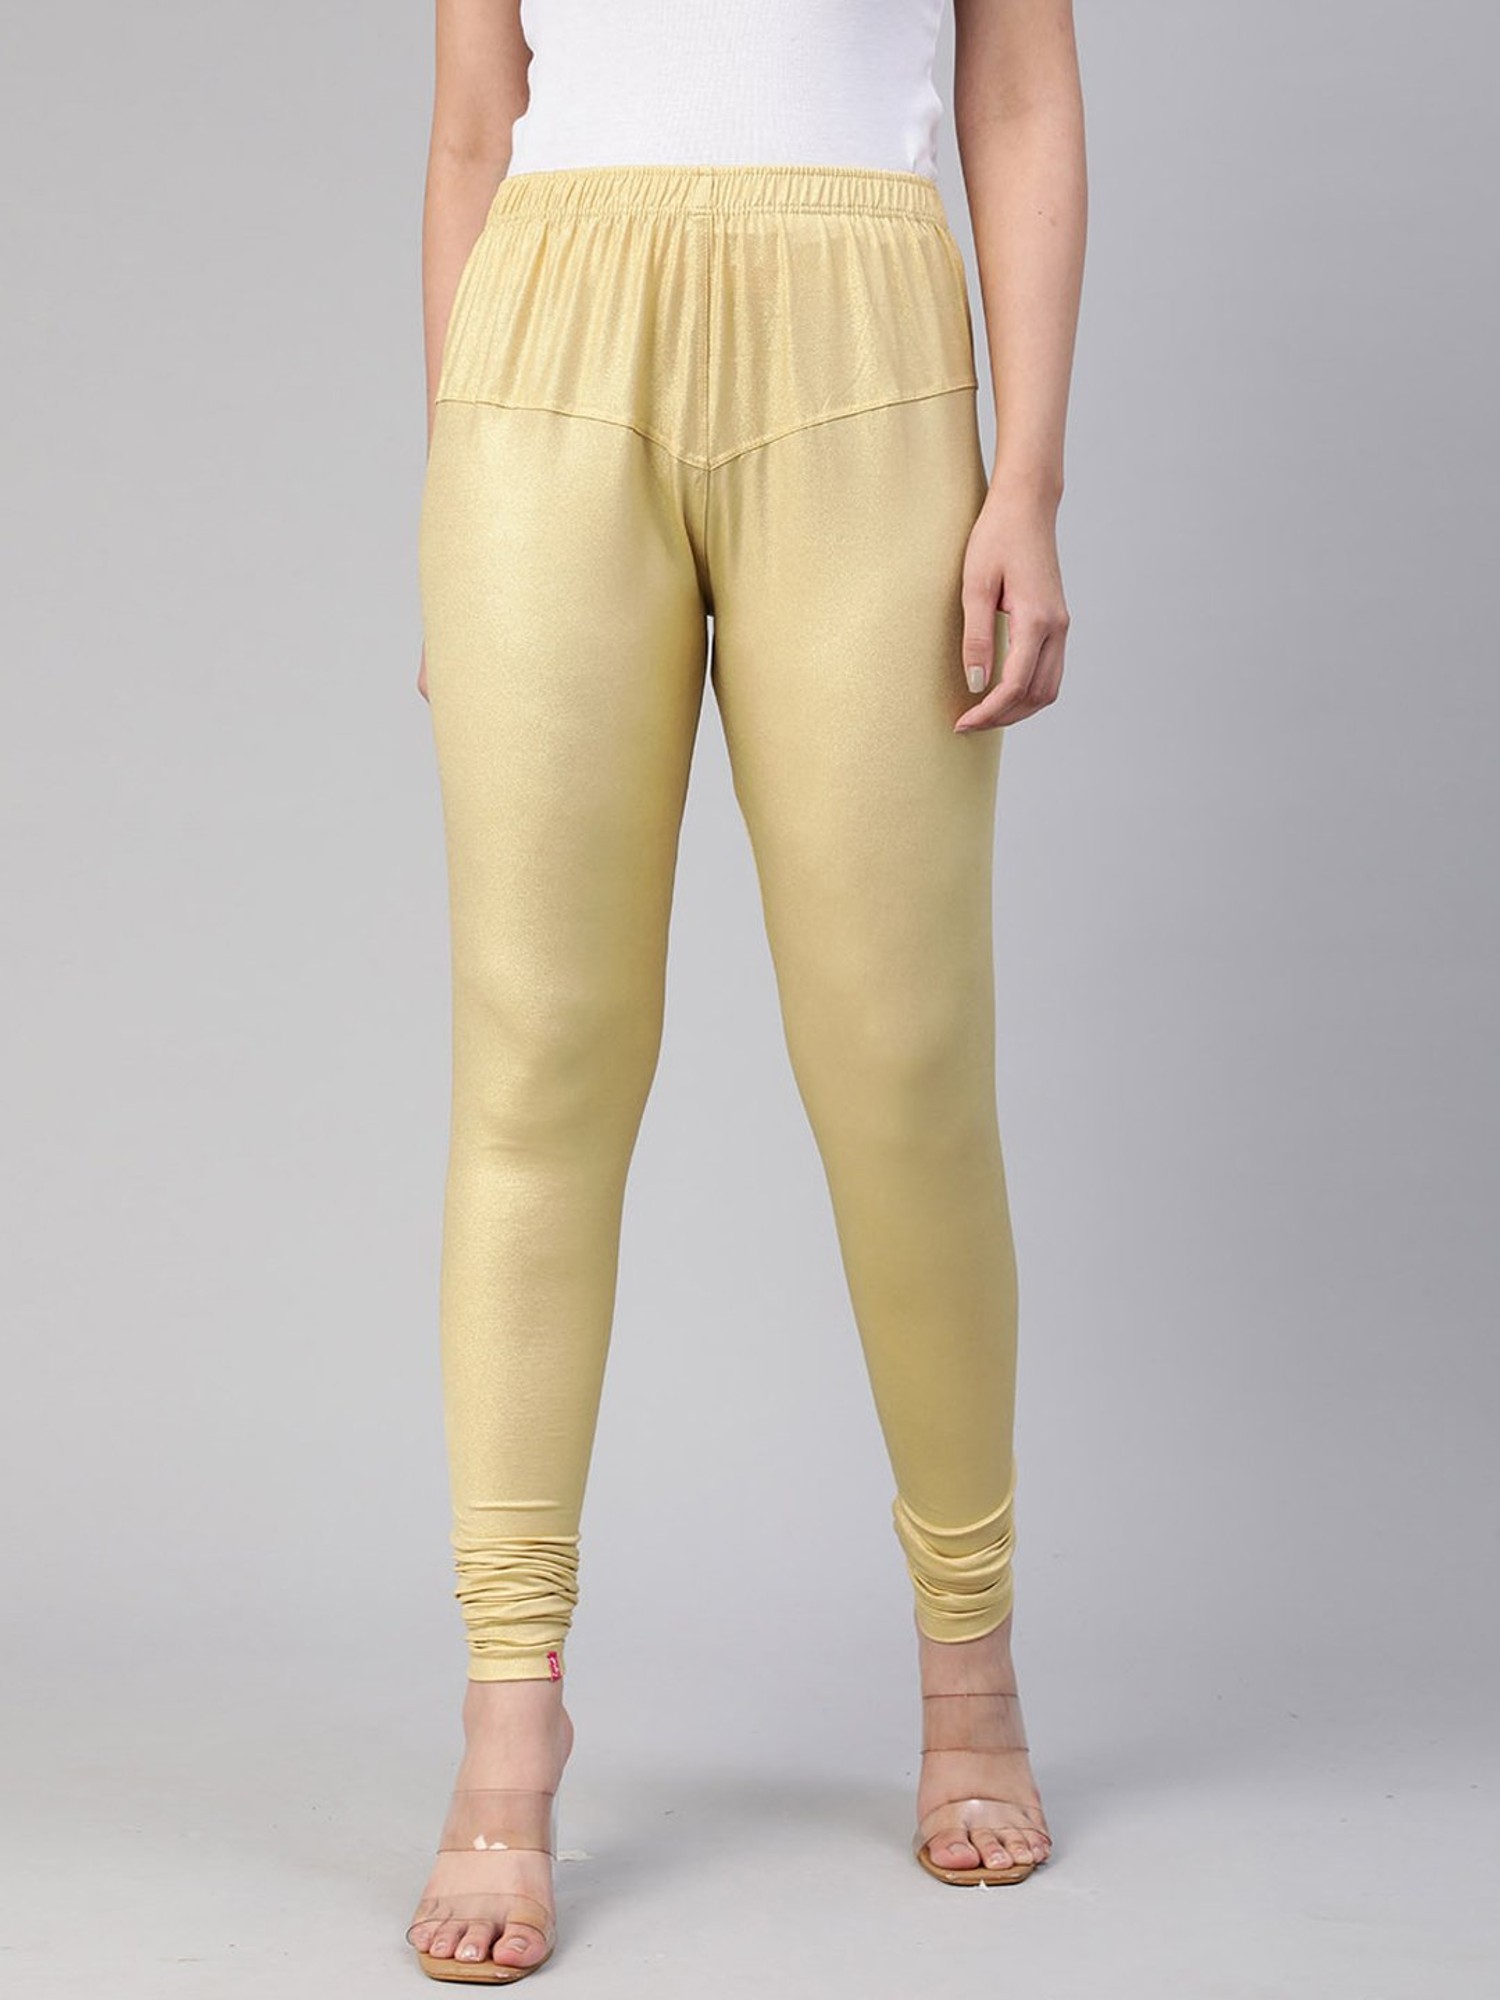 Shimmer Leggings Golden Color Plain Leggings For Girl – Lady India-cokhiquangminh.vn